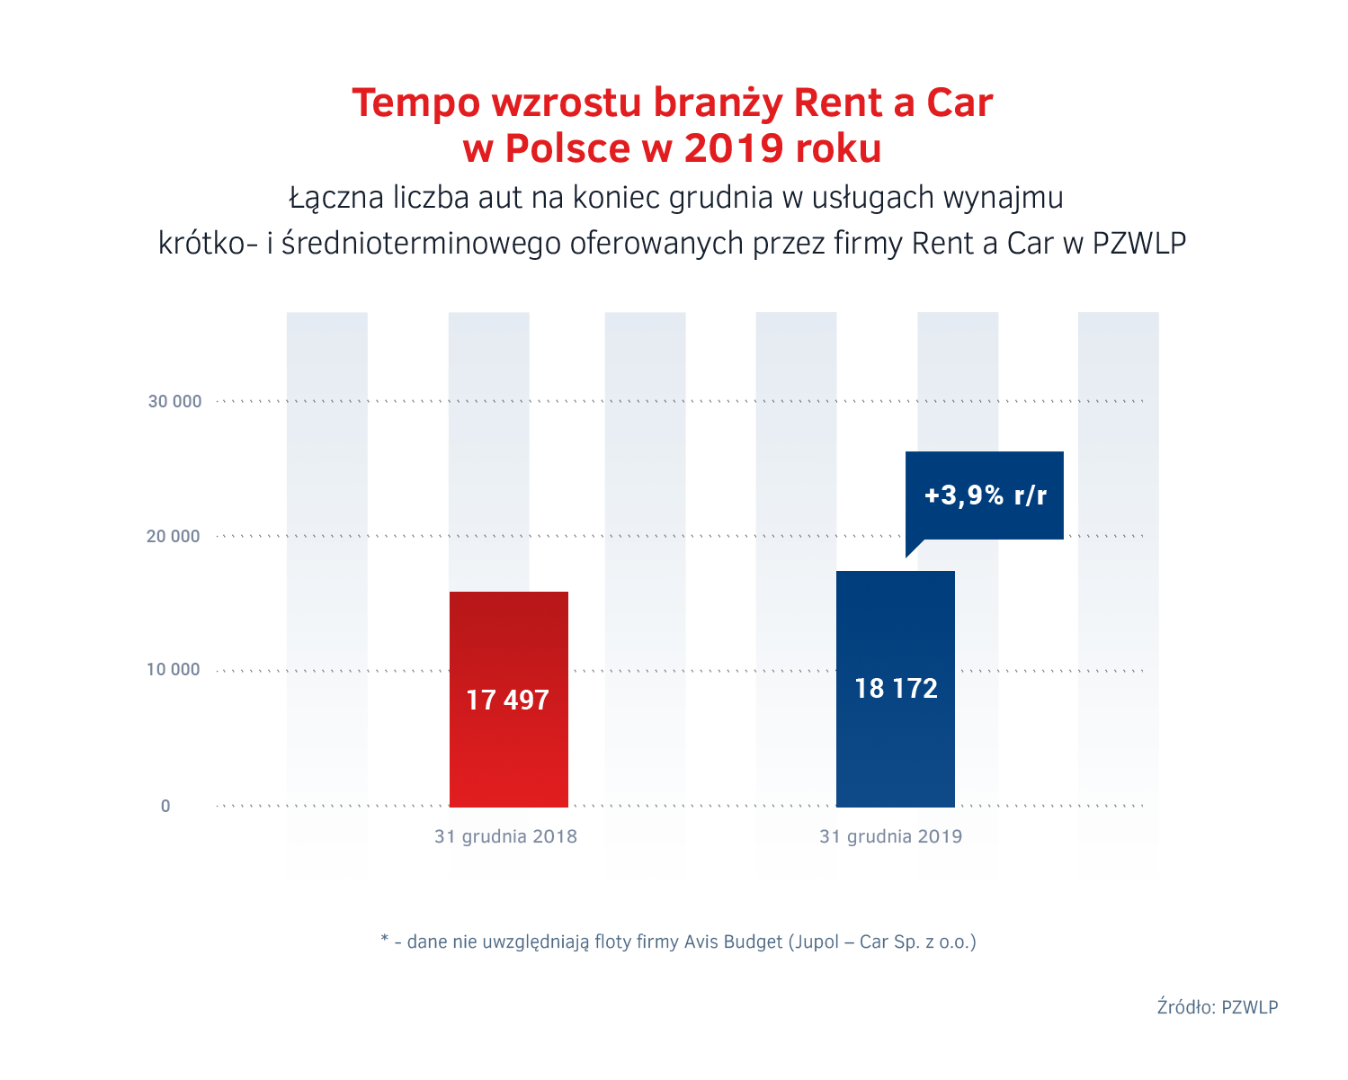 Tempo wzrostu Rent a Car w Polsce w 2019 roku